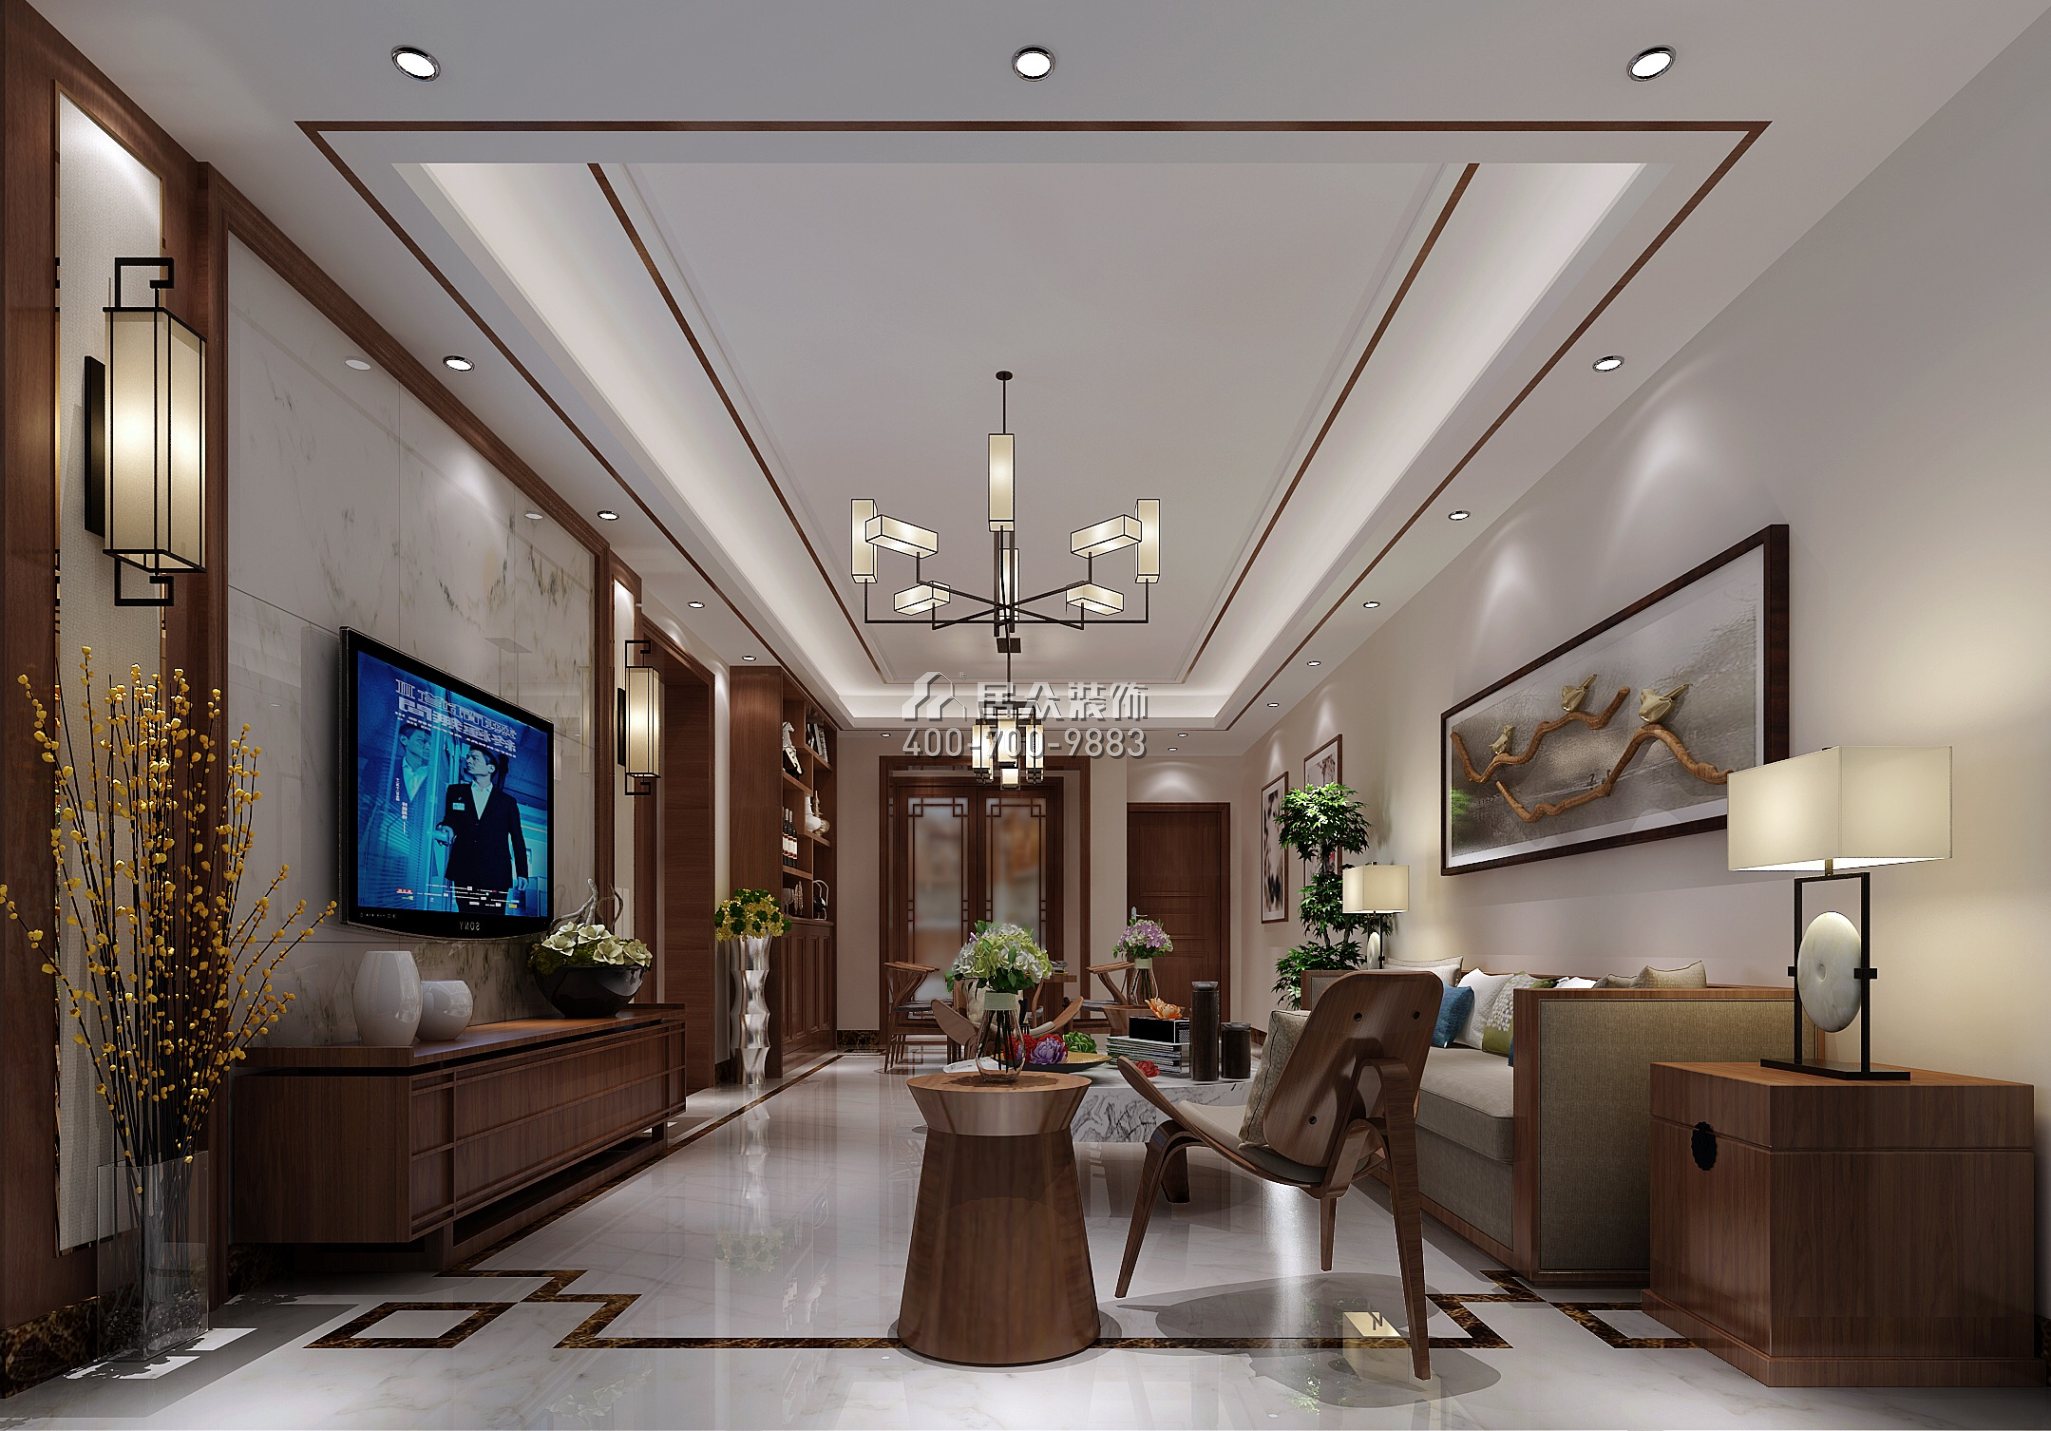 嘉都匯120平方米新古典風格平層戶型客廳裝修效果圖